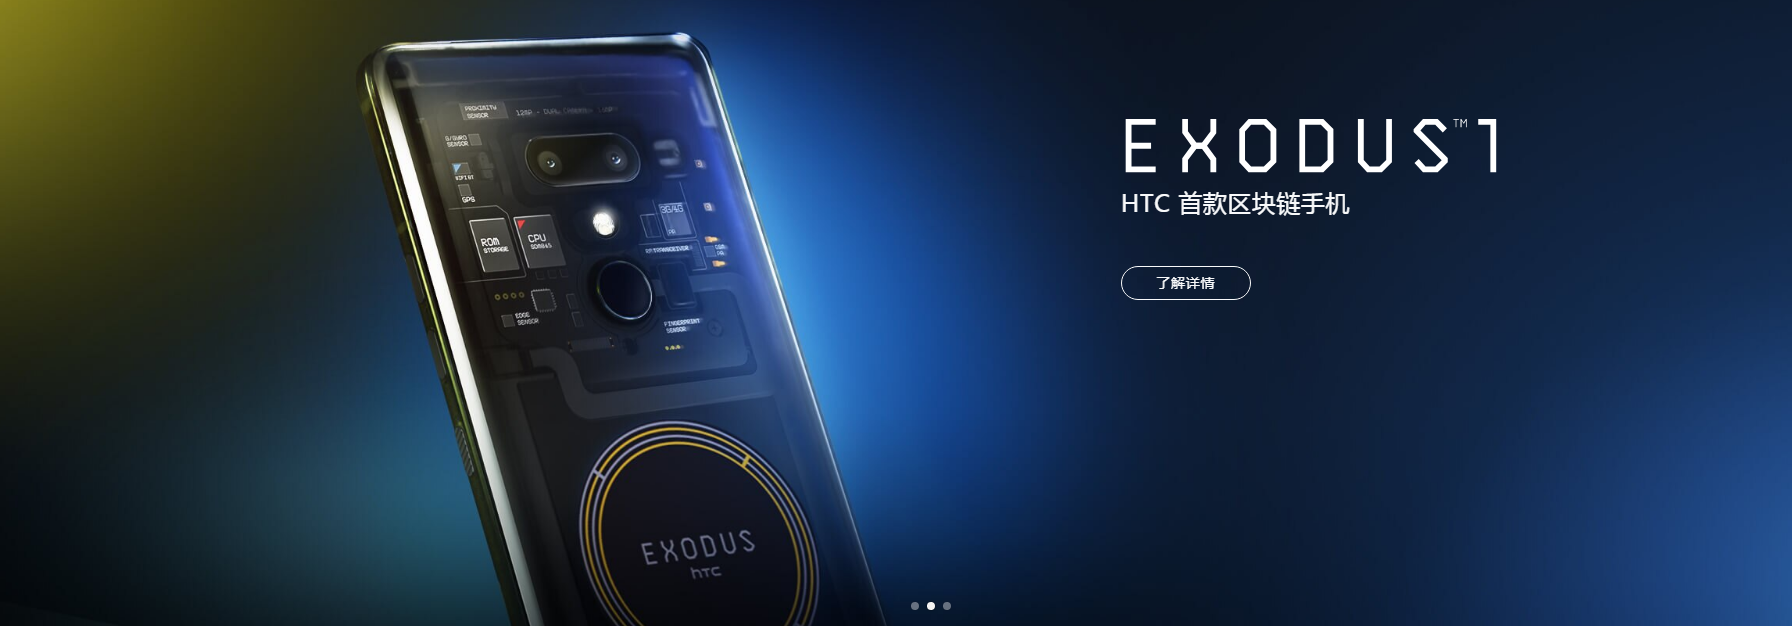 看哭了，HTC不久又公布了2款新机